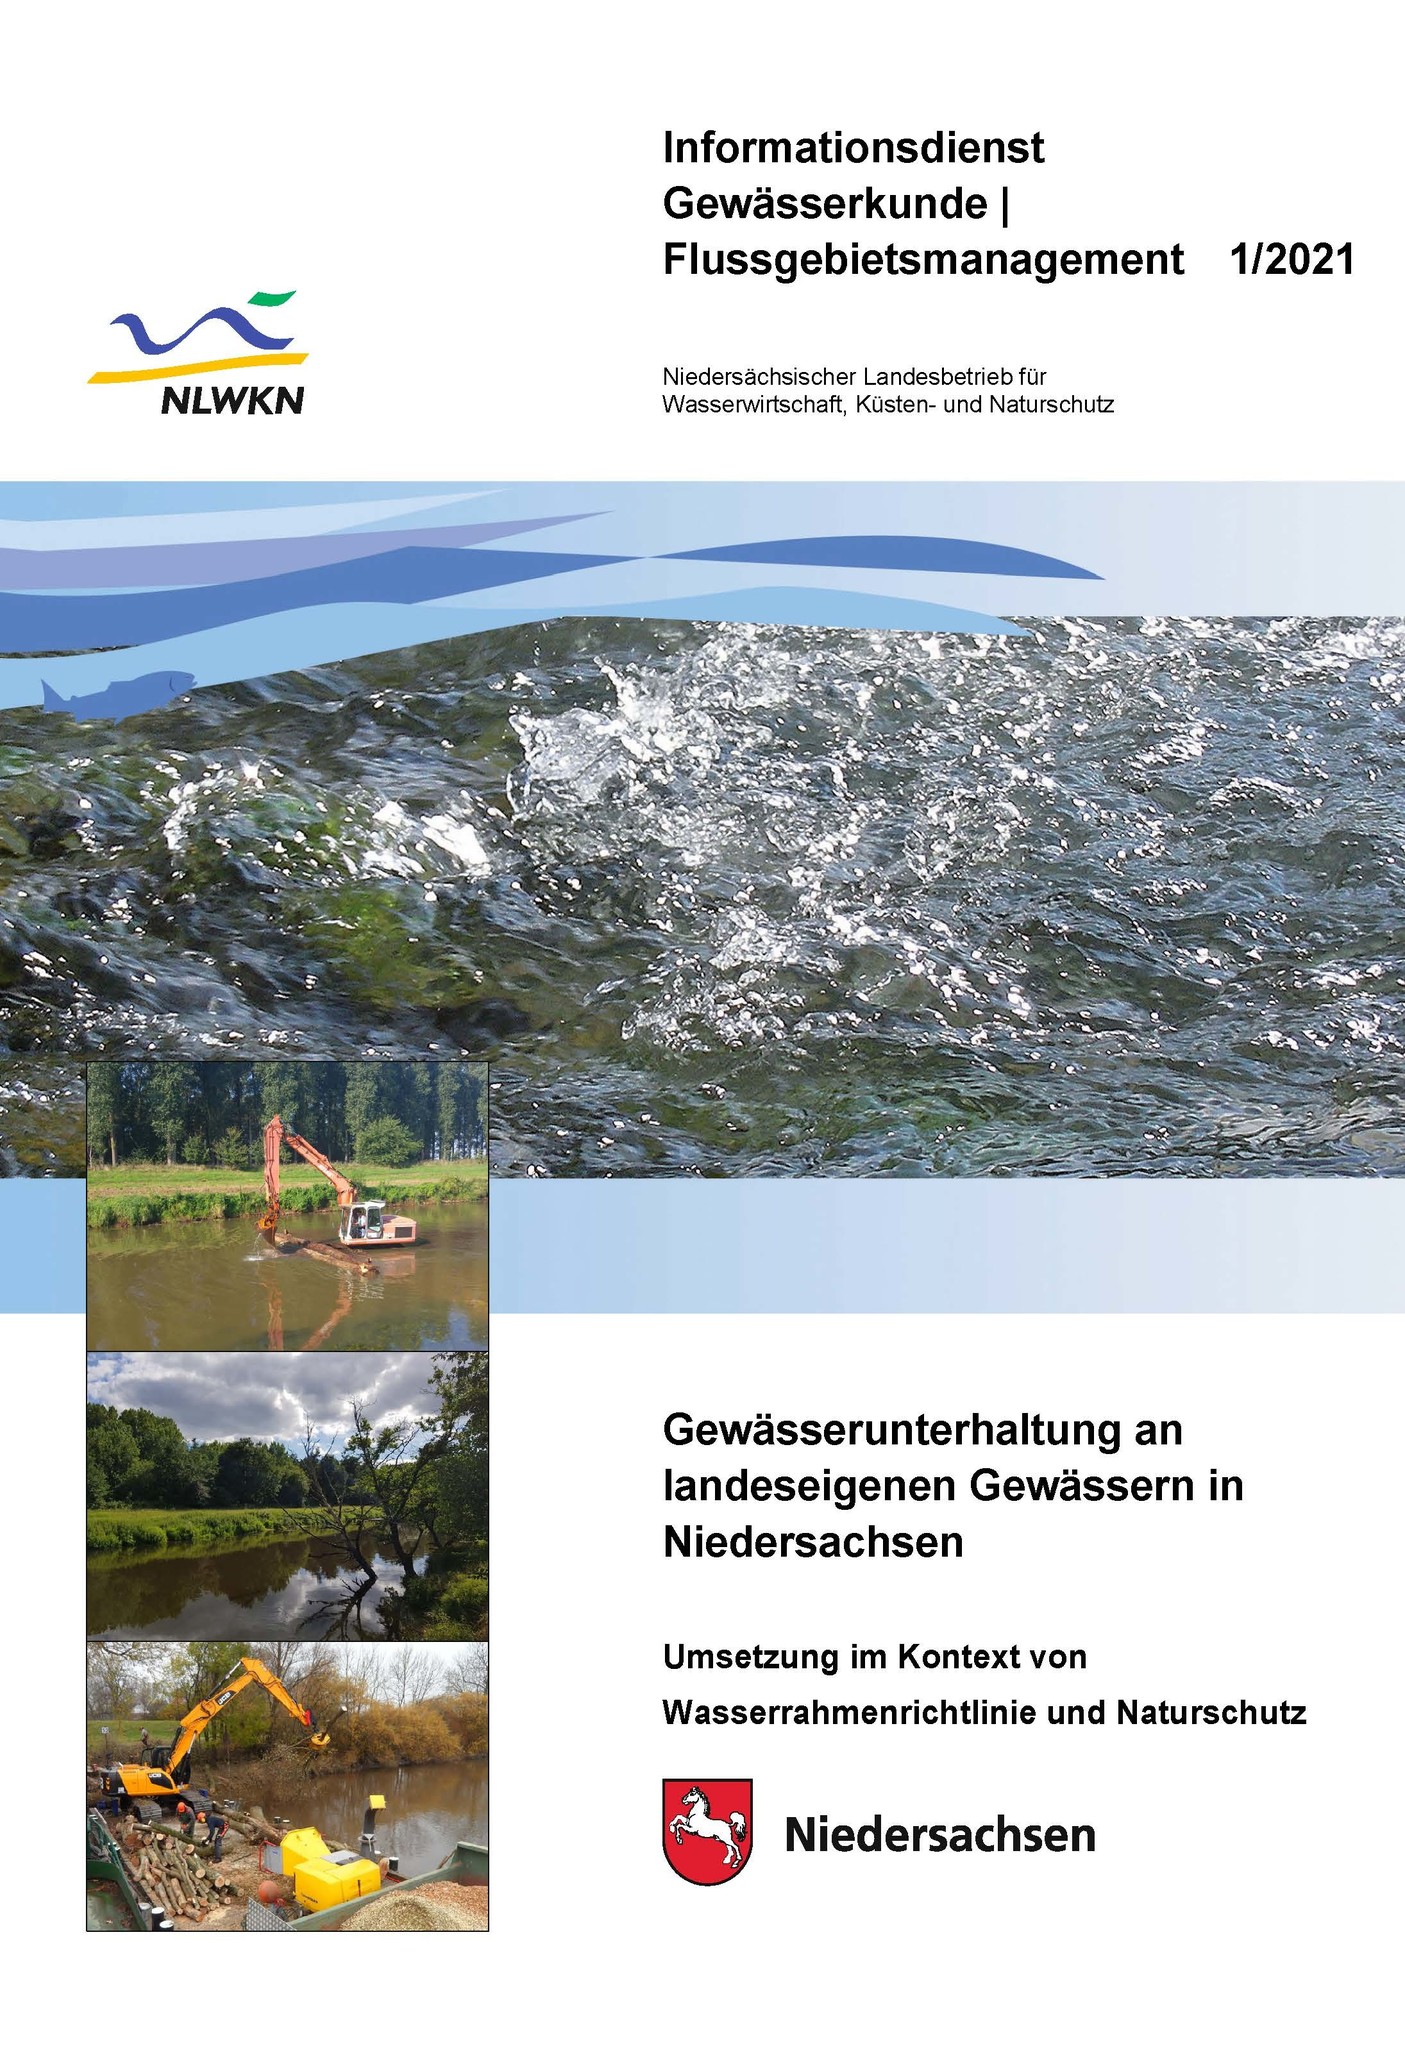 Gewässerunterhaltung an landeseigenen Gewässern in Niedersachsen  - Umsetzung im Kontext von WRRL und Naturschutz (IGF 1/21)